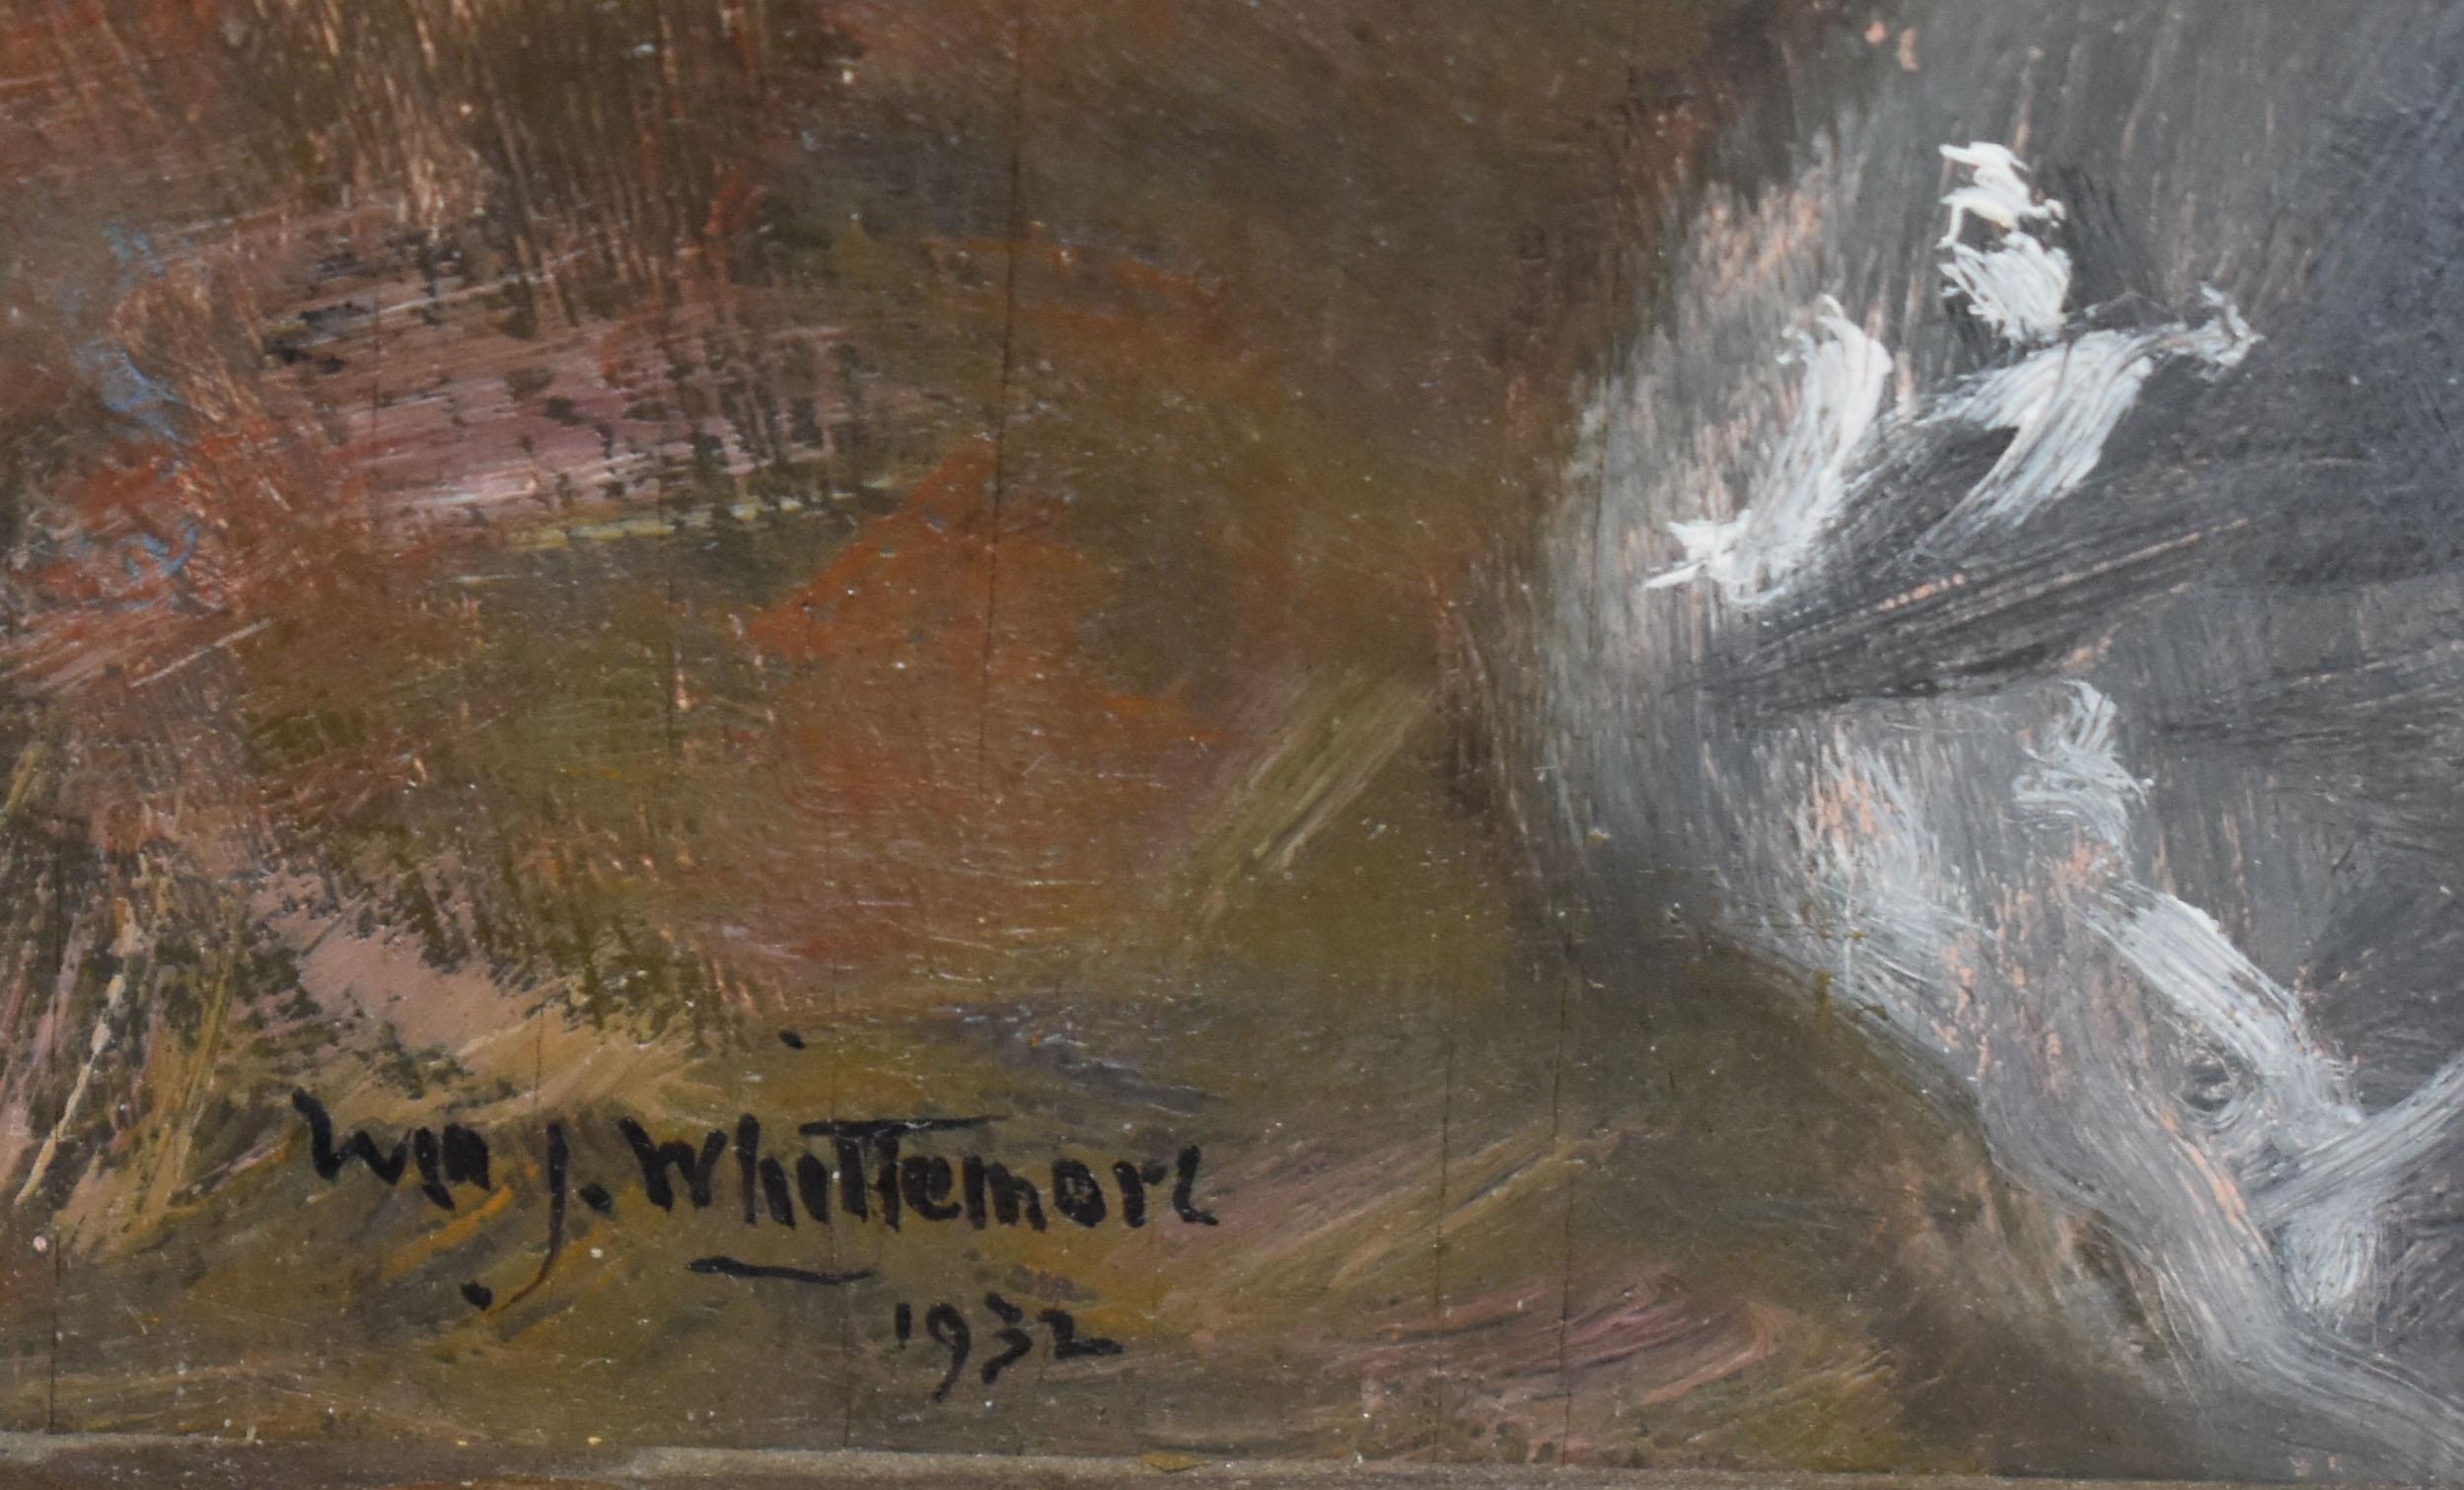 Antike amerikanische Impressionisten signiert Stillleben Gemälde von William John Whittemore  (1860 - 1955).  Öl auf Karton, ca. 1932. Unterschrieben.  Wird in einem Zeitrahmen angezeigt. Bildgröße, 9,5 